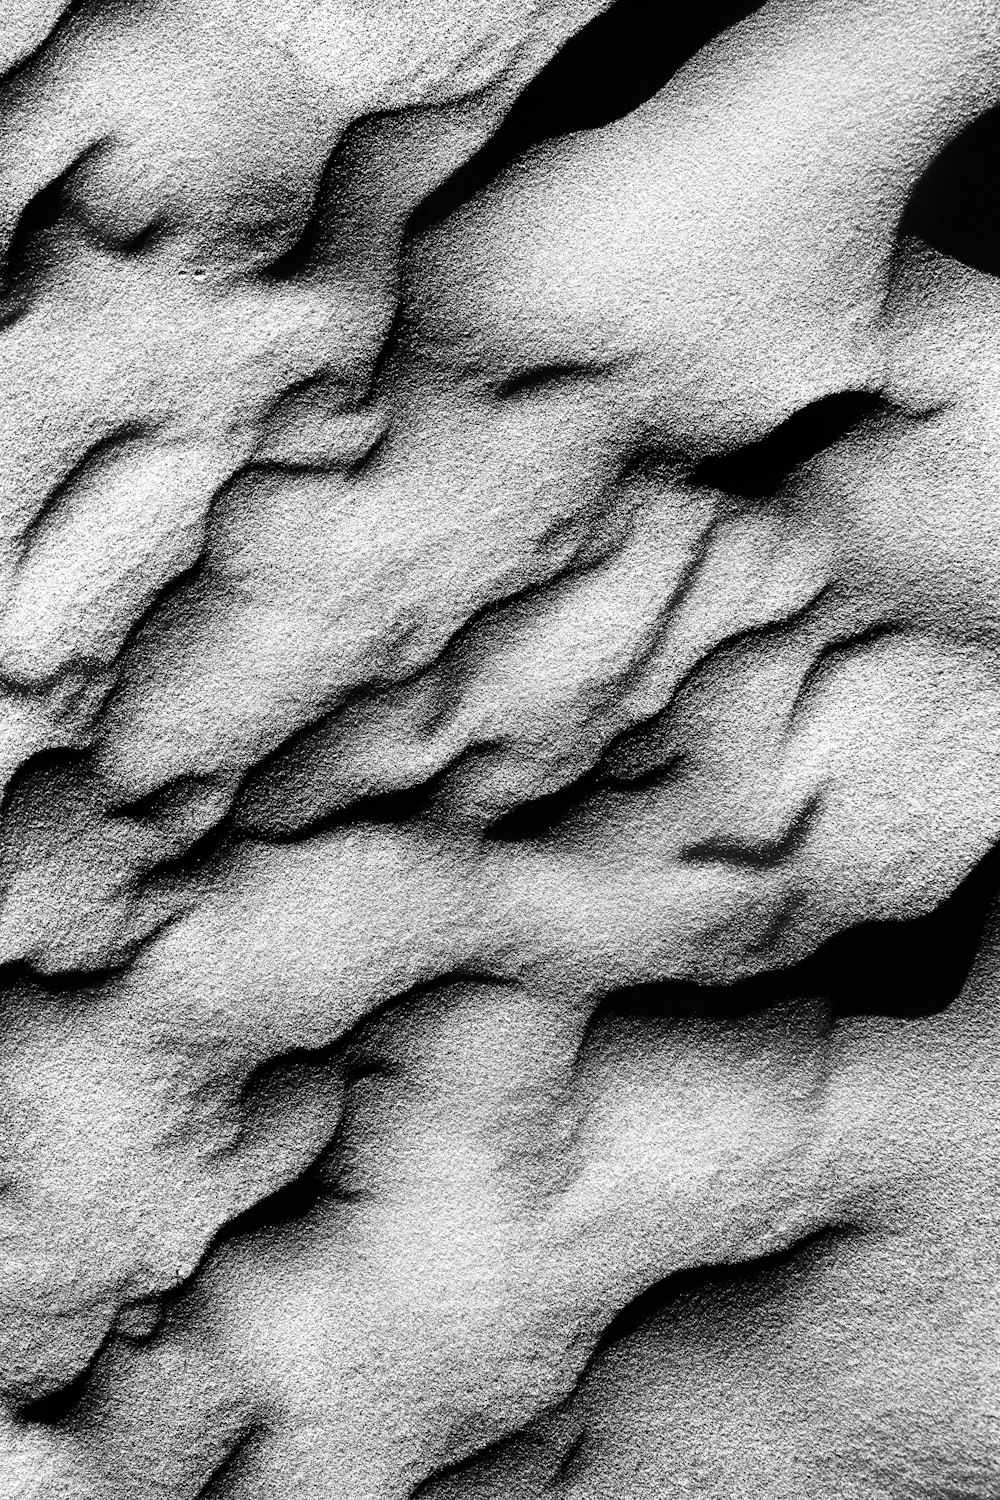 암석의 흑백 사진